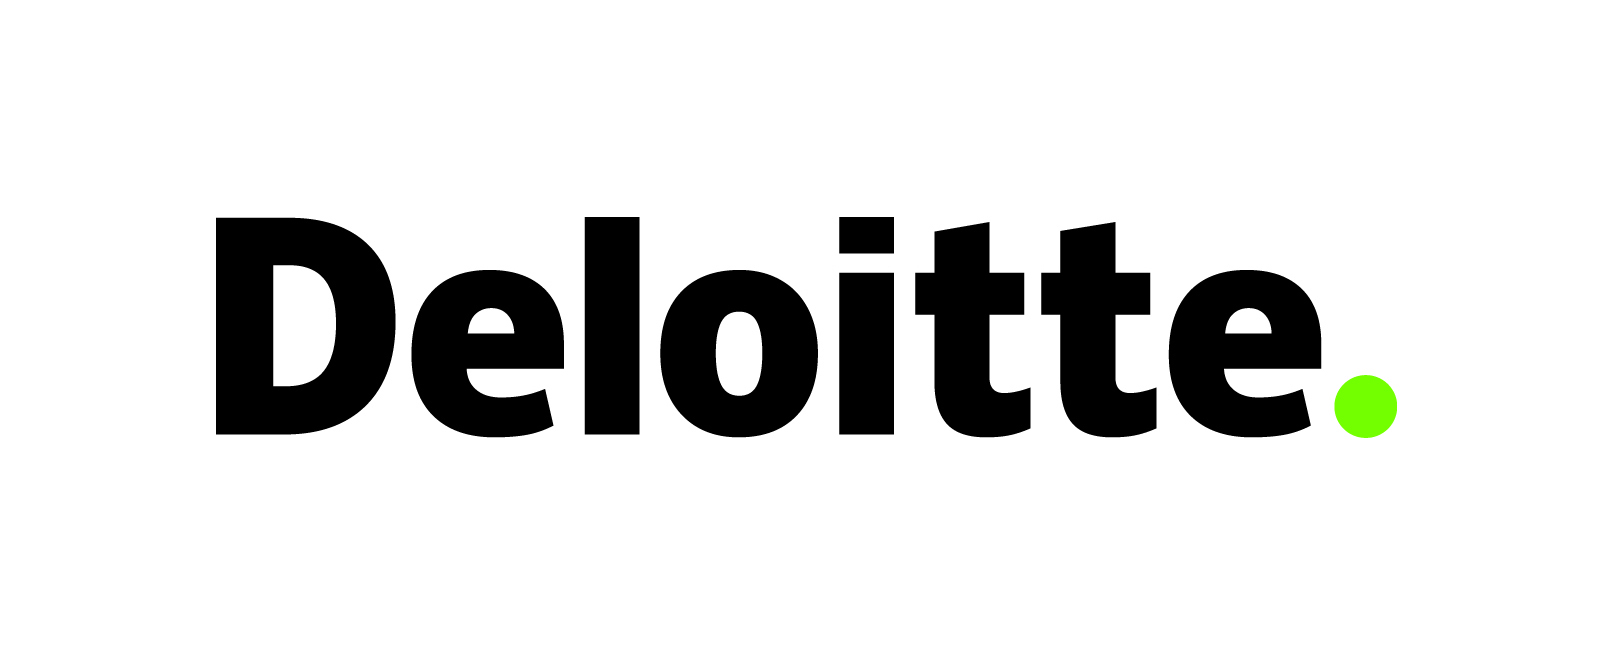 Deloitte logo.jpg